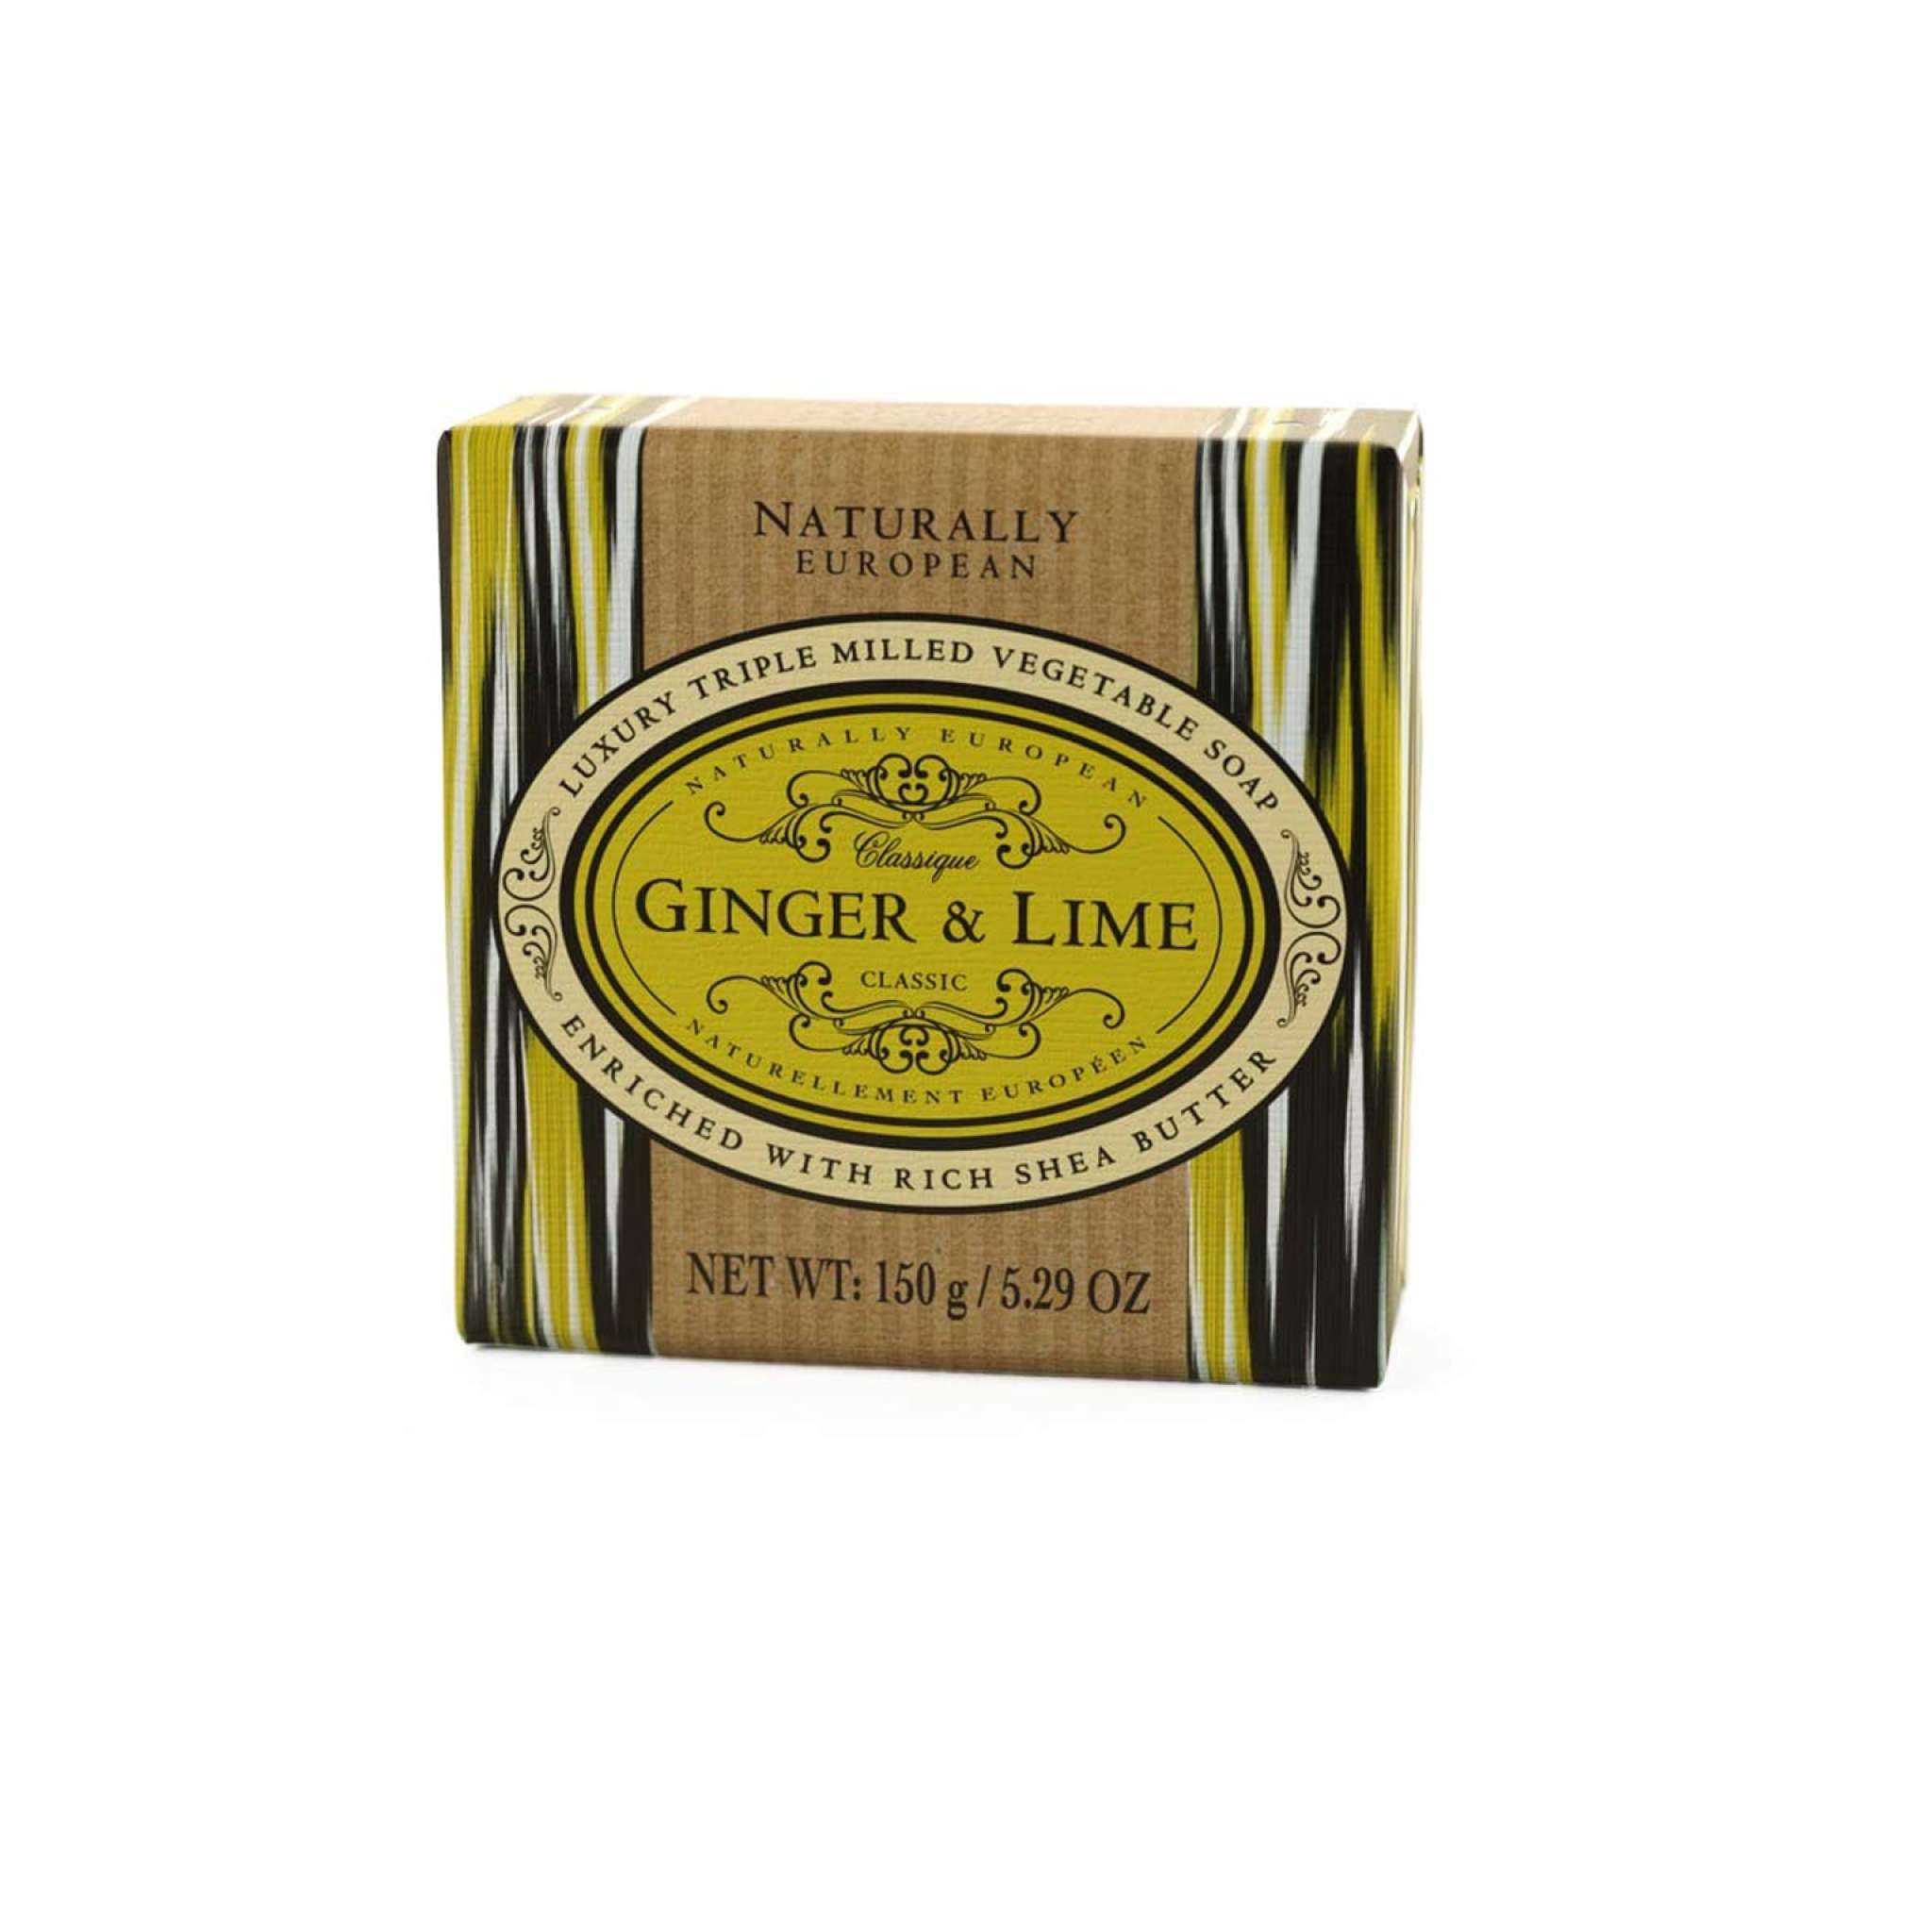 Ginger & Lime Naturally European tvål